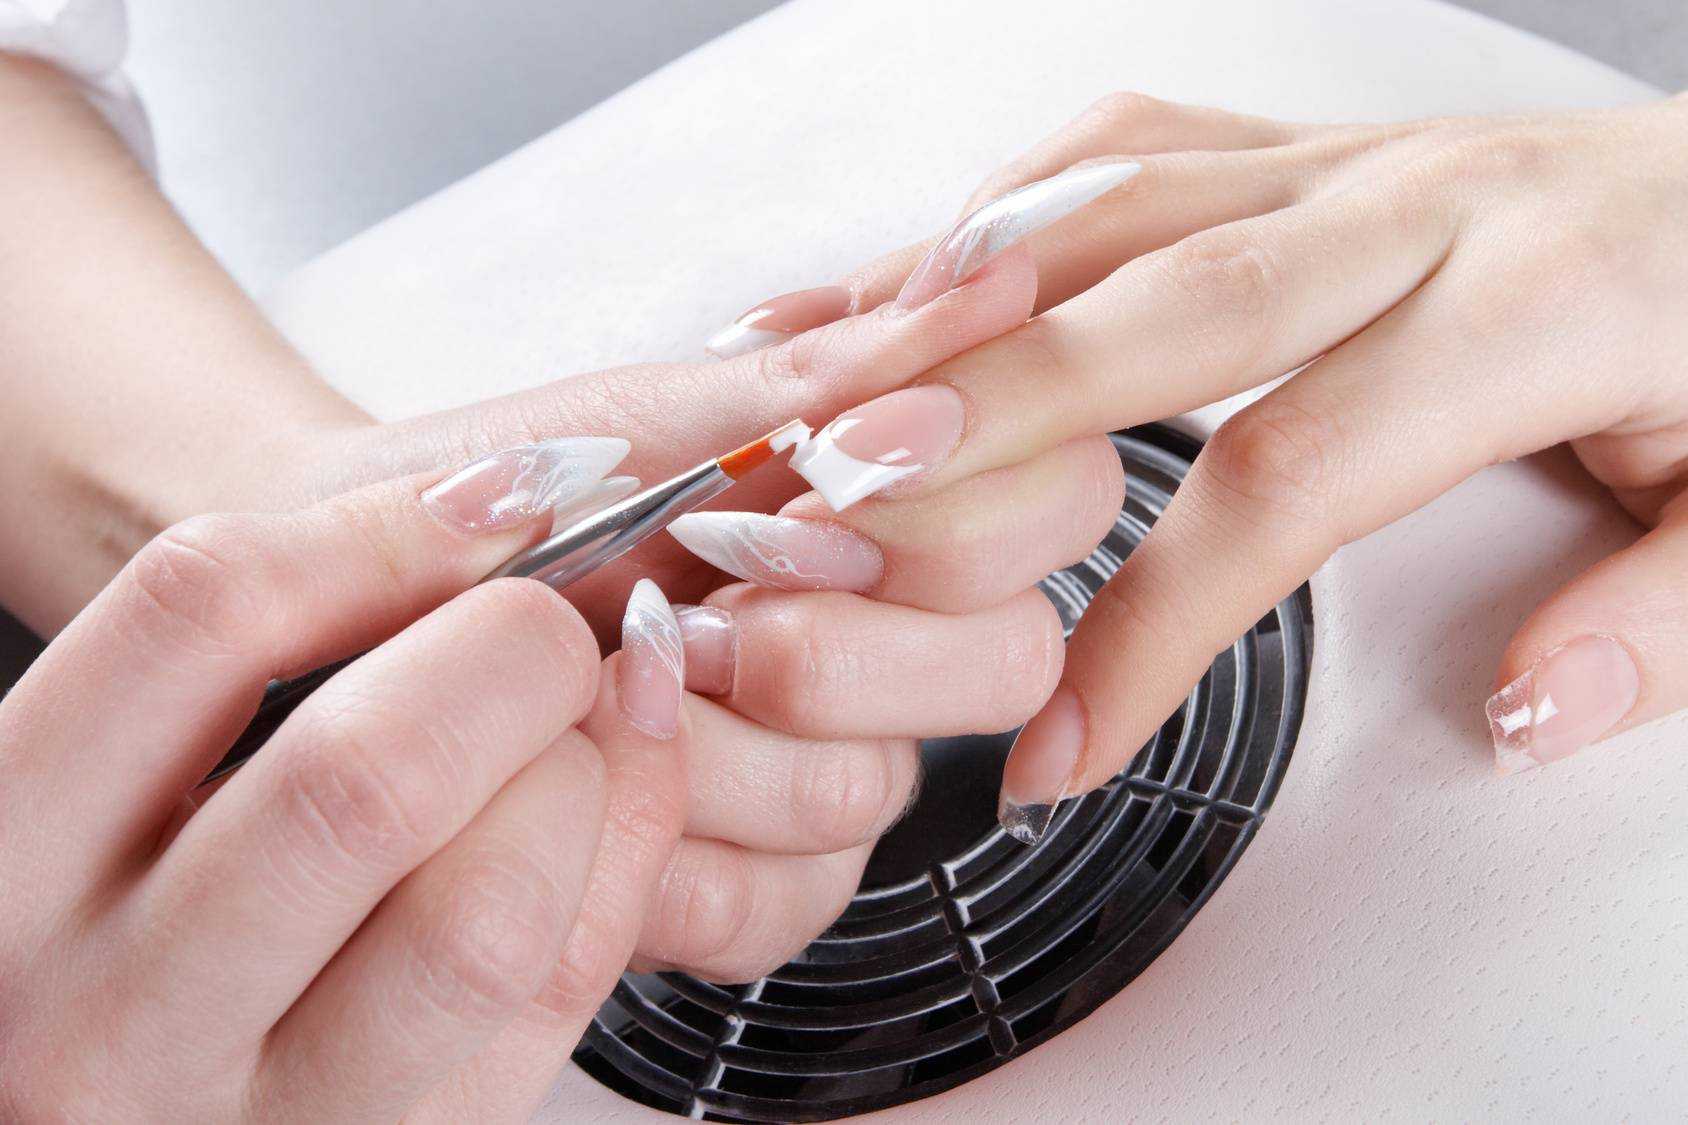 Уход за ногтями в домашних условиях - как правильно ухаживать за ногтевой пластиной на руках и ногах, делаем маникюр самостоятельно